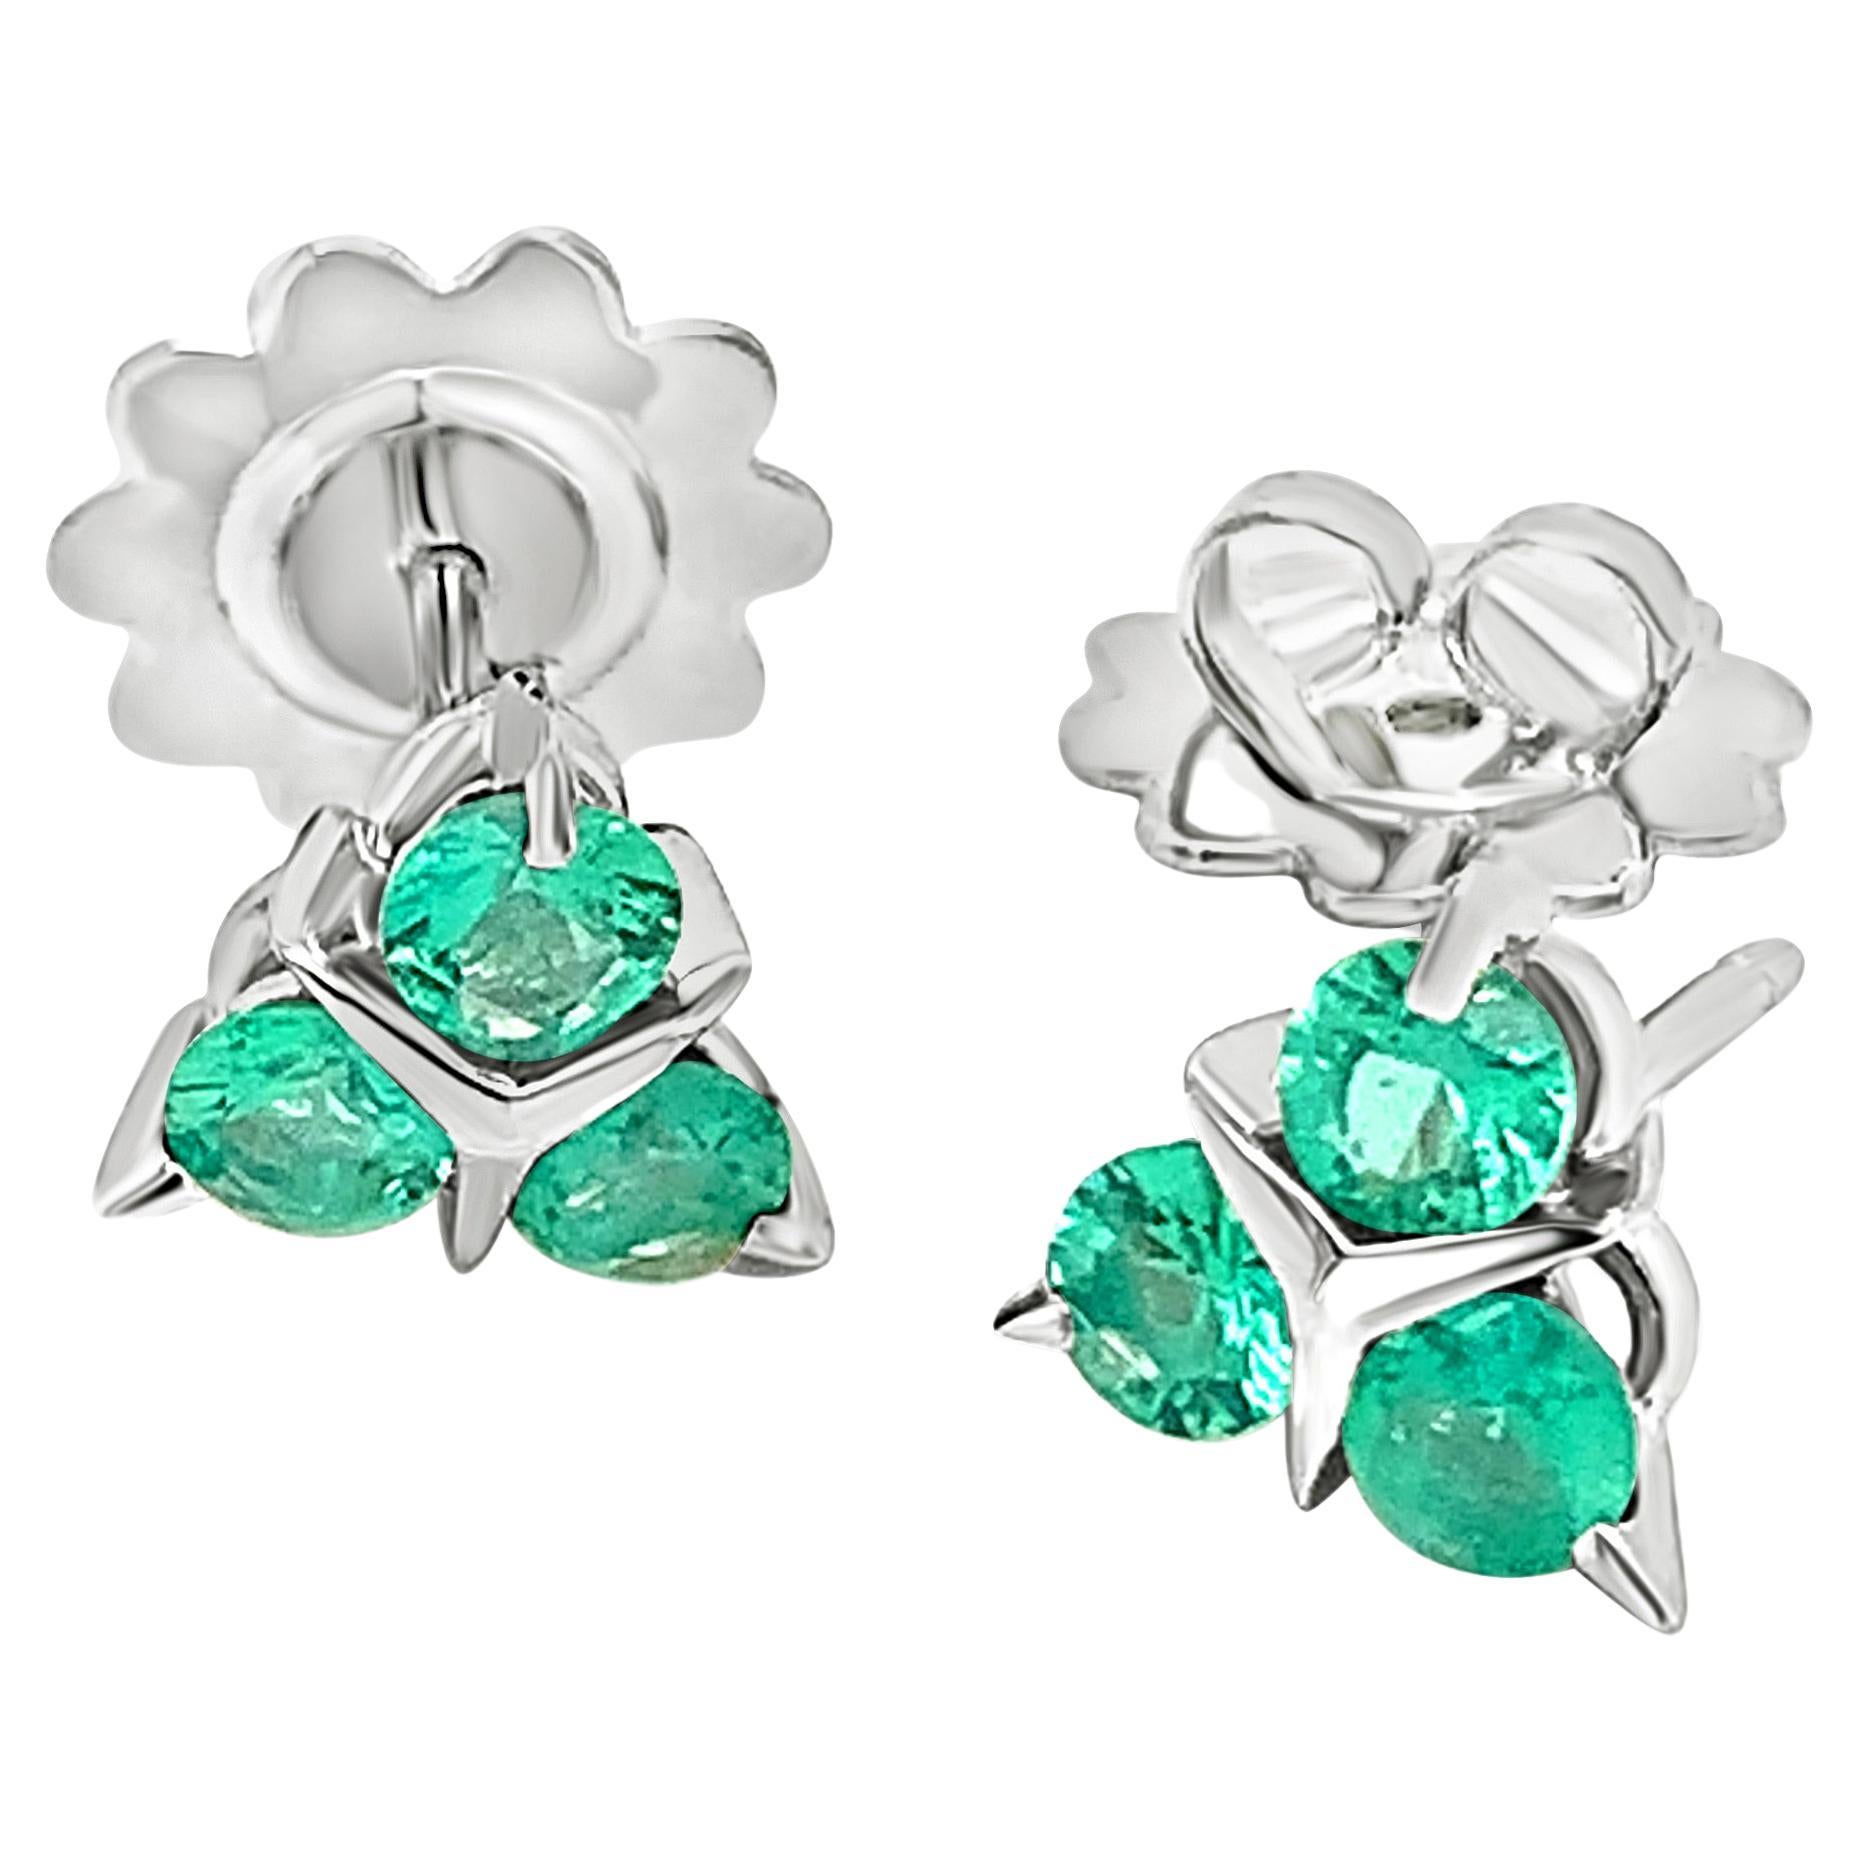 18 Karat White Gold Emerald Garavelli Stud Earrings